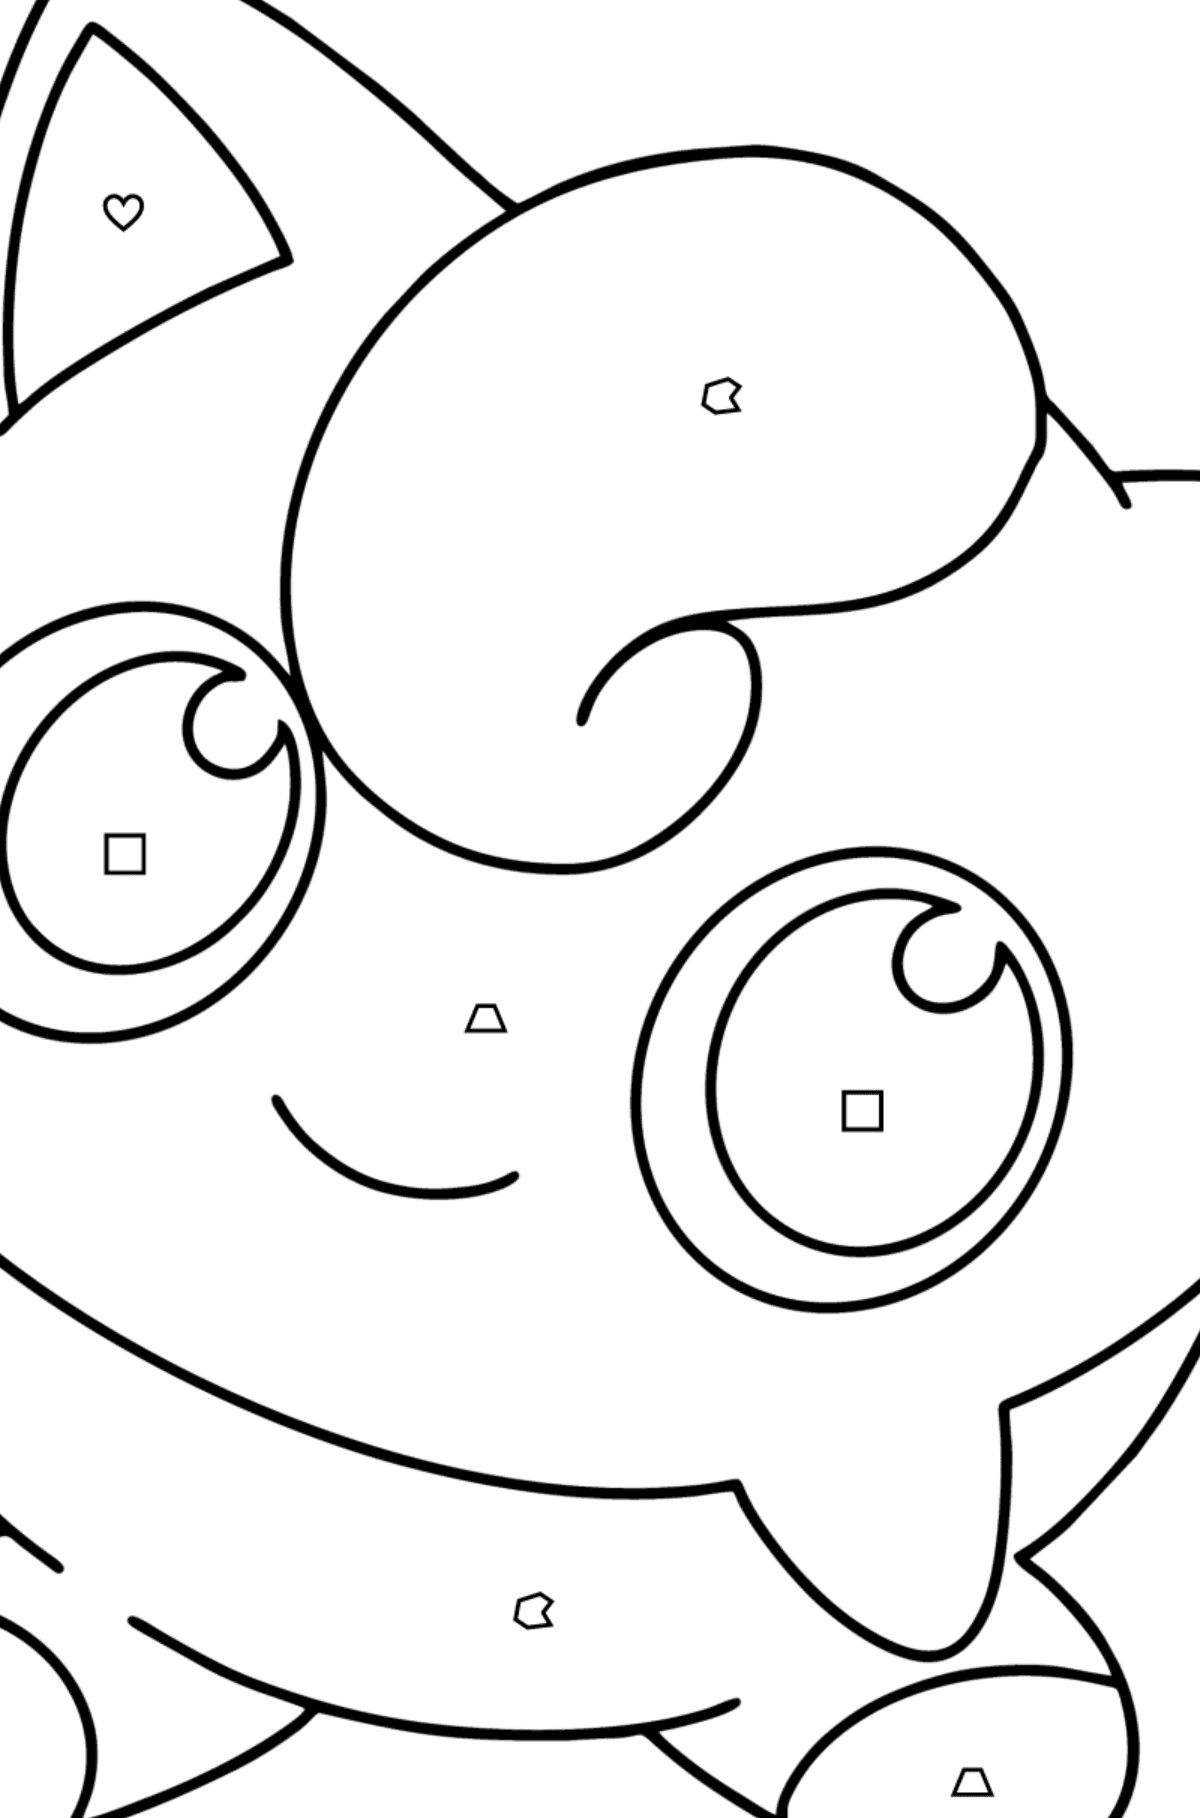 Desenho de Pokémon Go Jigglypuff para colorir - Colorir por Formas Geométricas para Crianças